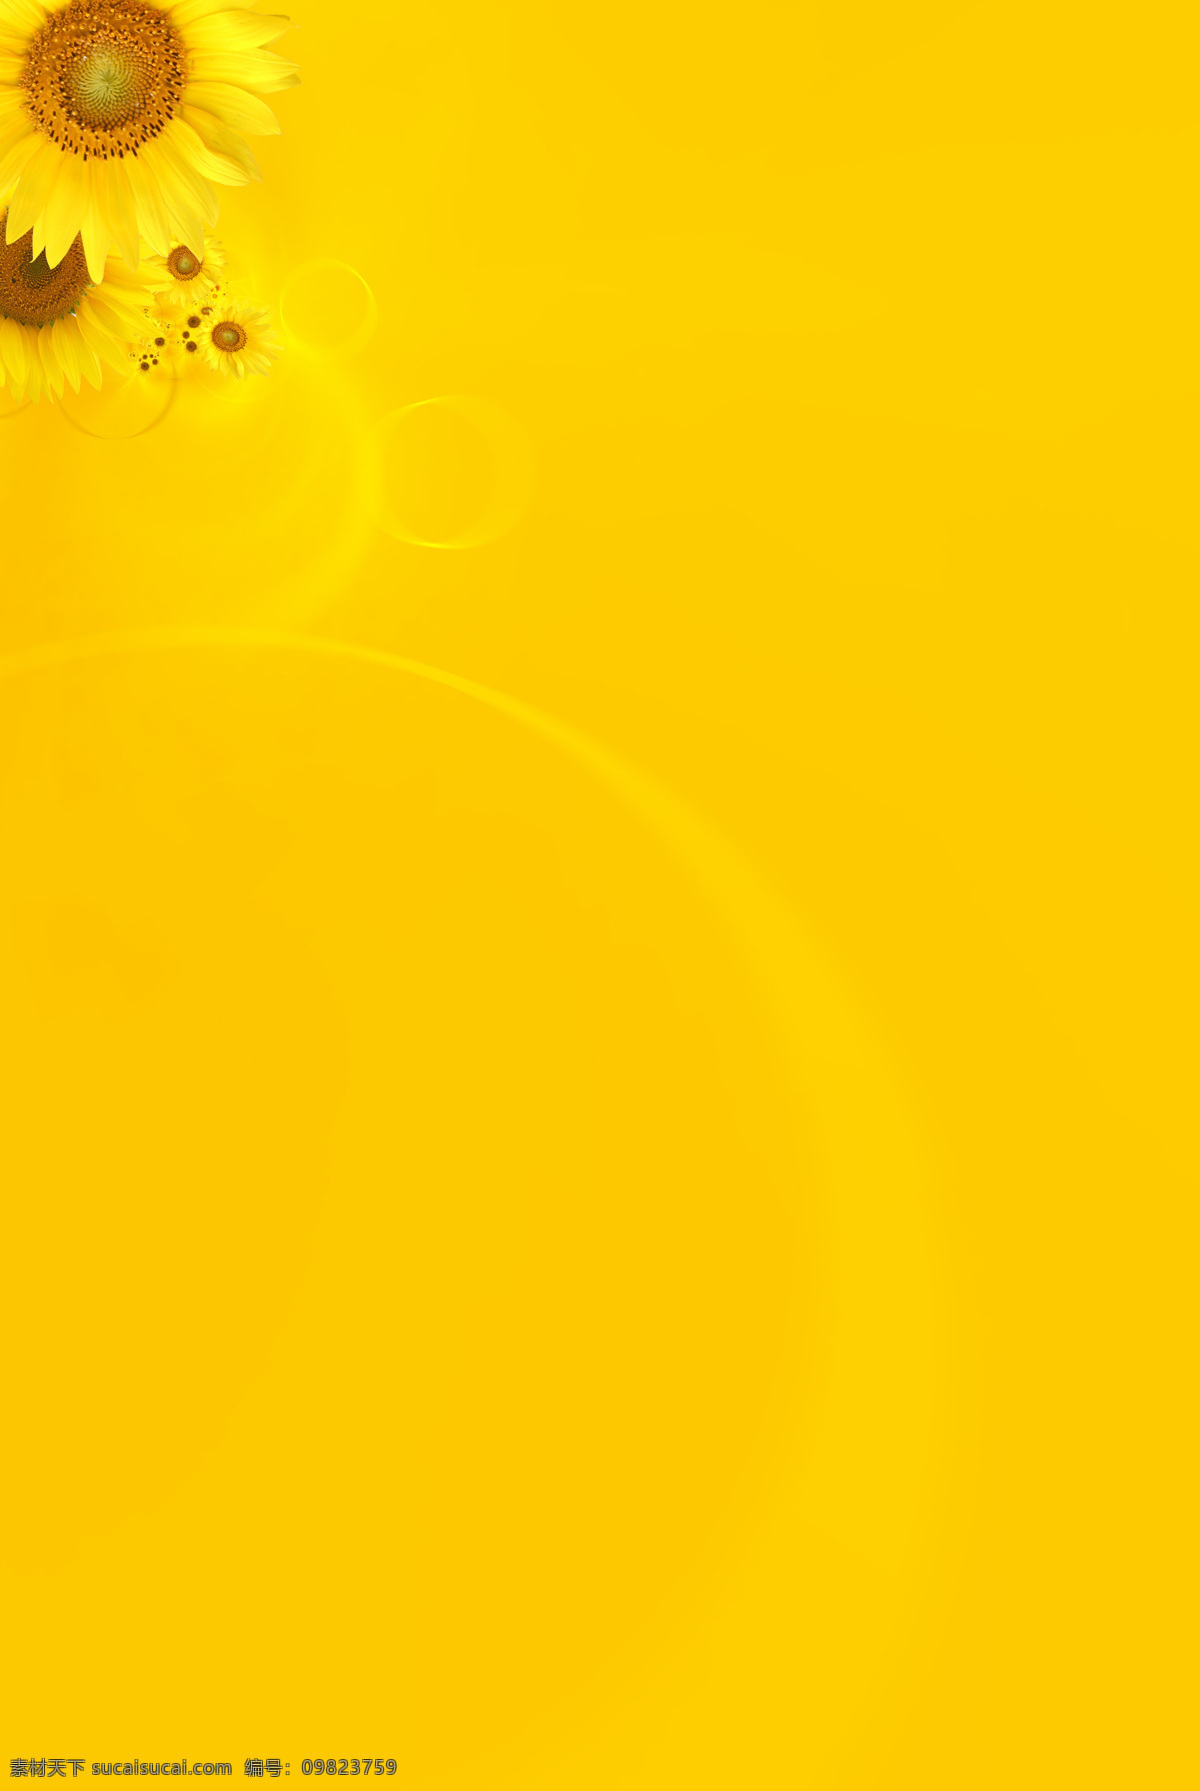 向日葵 黄色 背景 向阳花 黄色背景 黄色底图 底纹 信纸 设计类 背景底纹 底纹边框